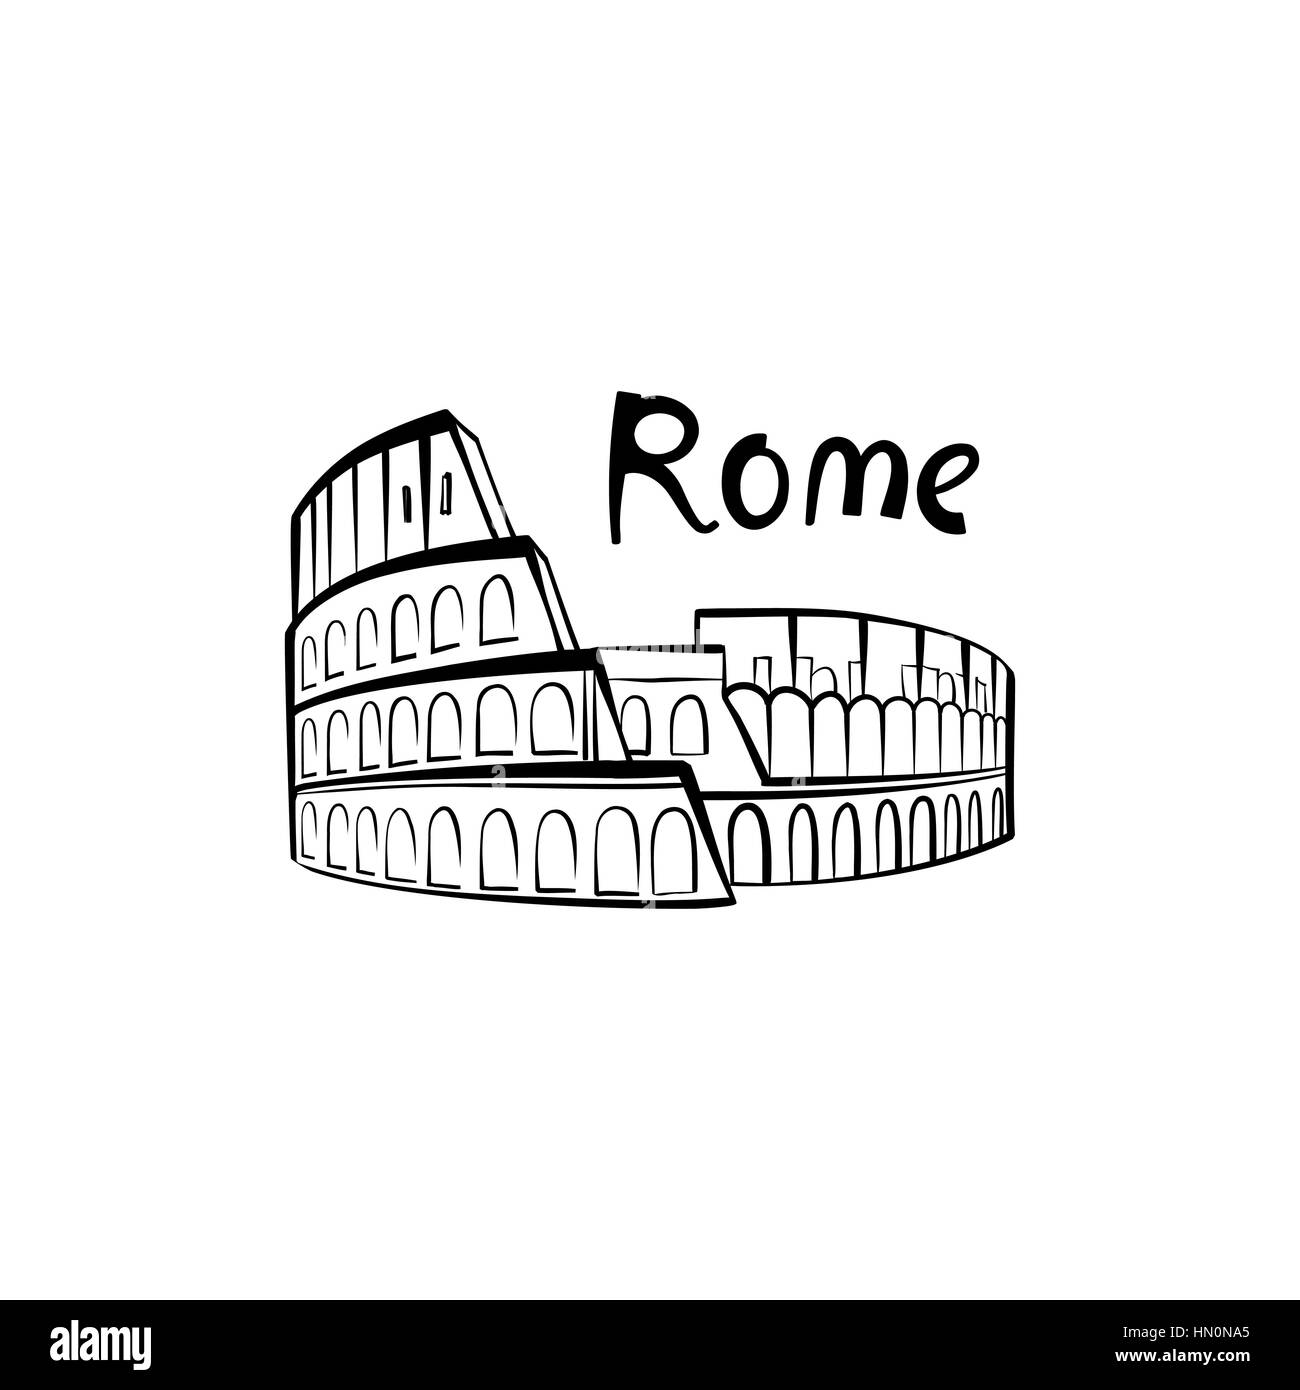 Roma Colosseo segno. italiano famoso Colosseo. Viaggiare in Italia etichetta. Roma icona architettonica con caratteri Illustrazione Vettoriale